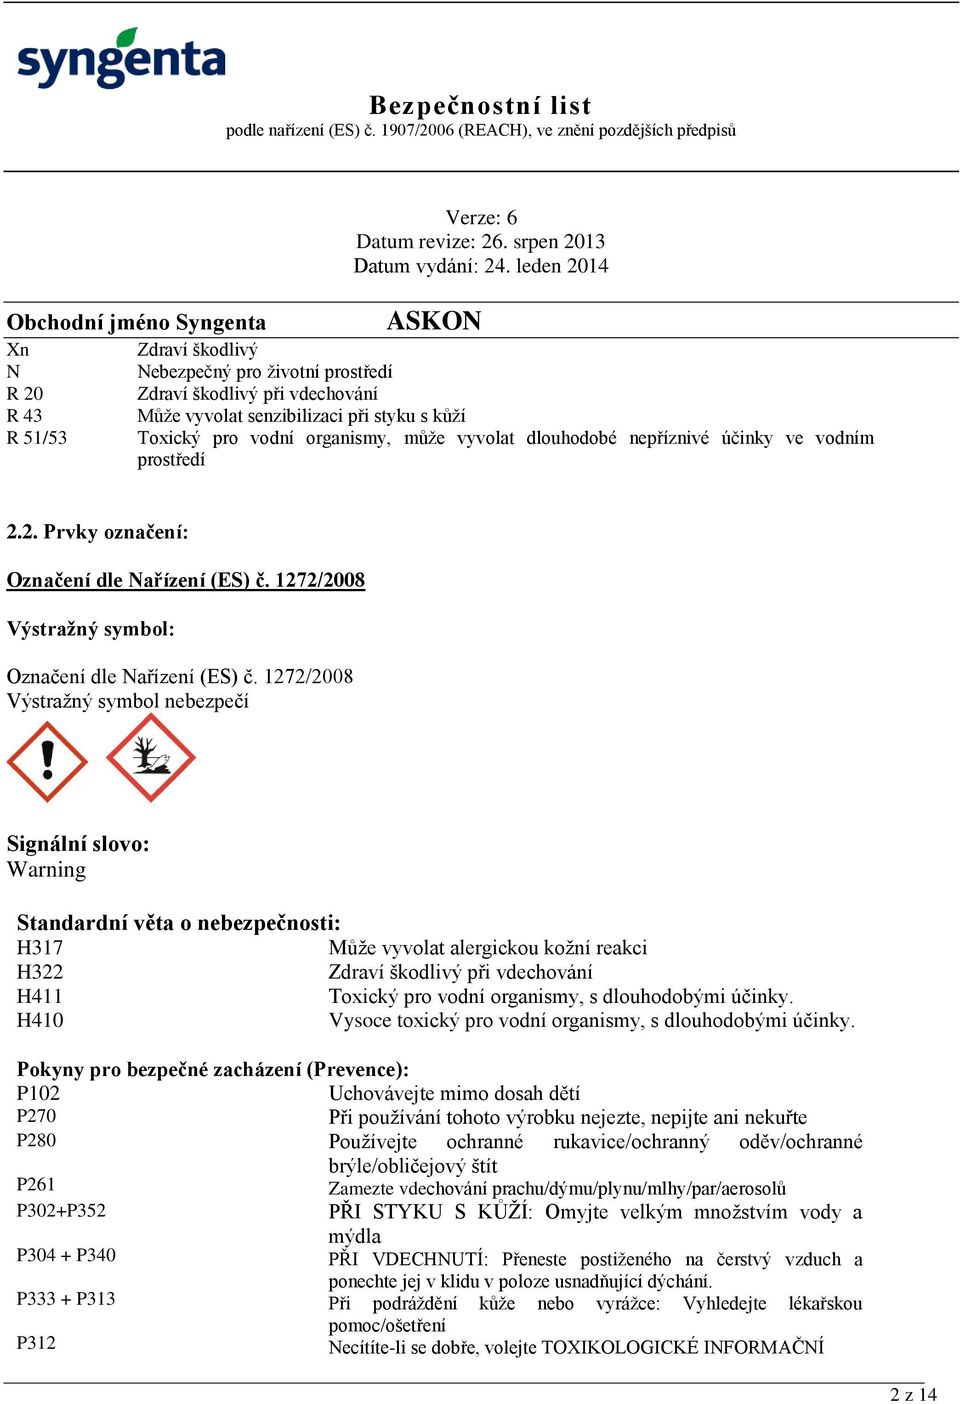 1272/2008 Výstražný symbol nebezpečí Signální slovo: Warning Standardní věta o nebezpečnosti: H317 Může vyvolat alergickou kožní reakci H322 Zdraví škodlivý při vdechování H411 Toxický pro vodní